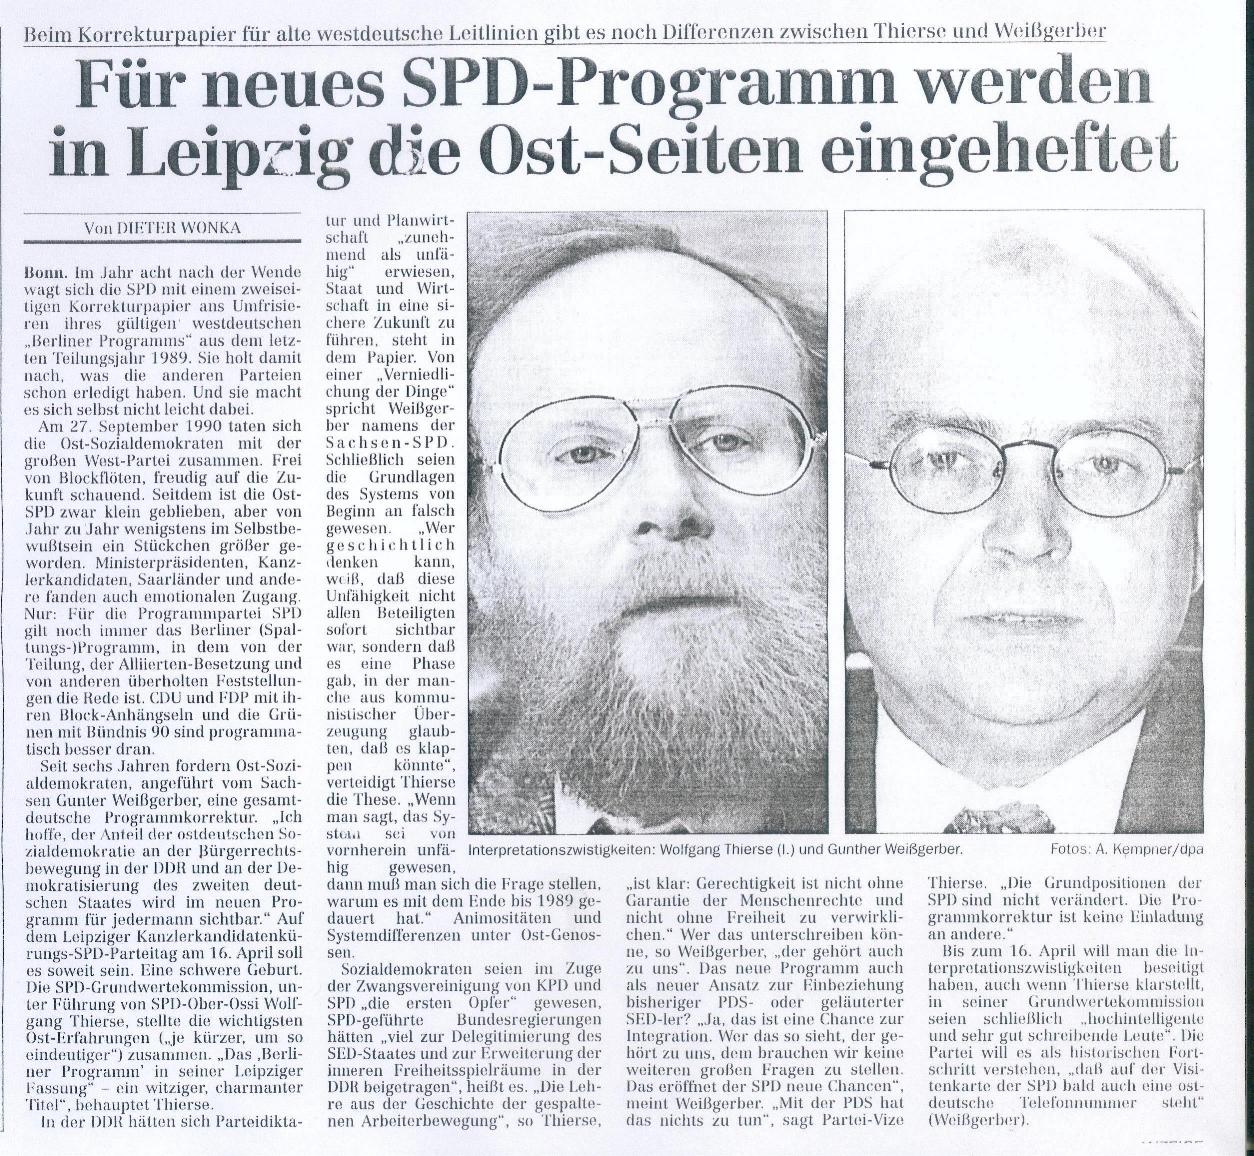 Der Kampf um den ostdeutschen Anteil im Berliner Programm der SPD